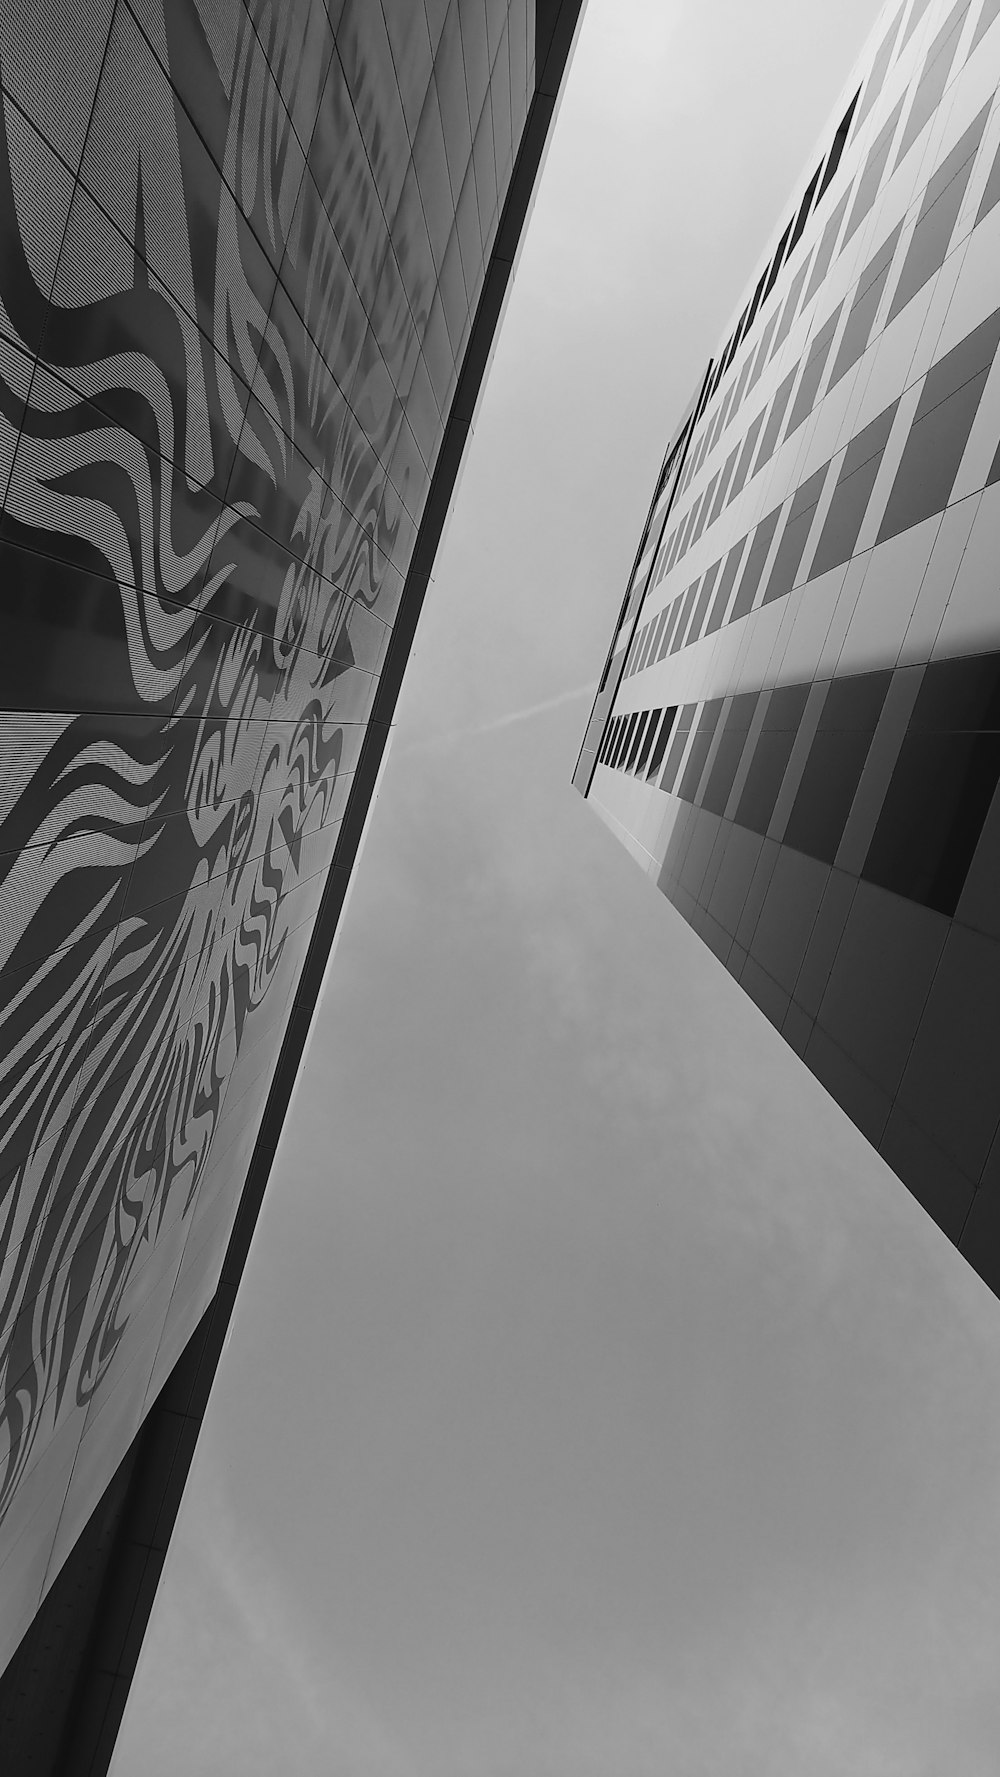 Une photo en noir et blanc de deux bâtiments